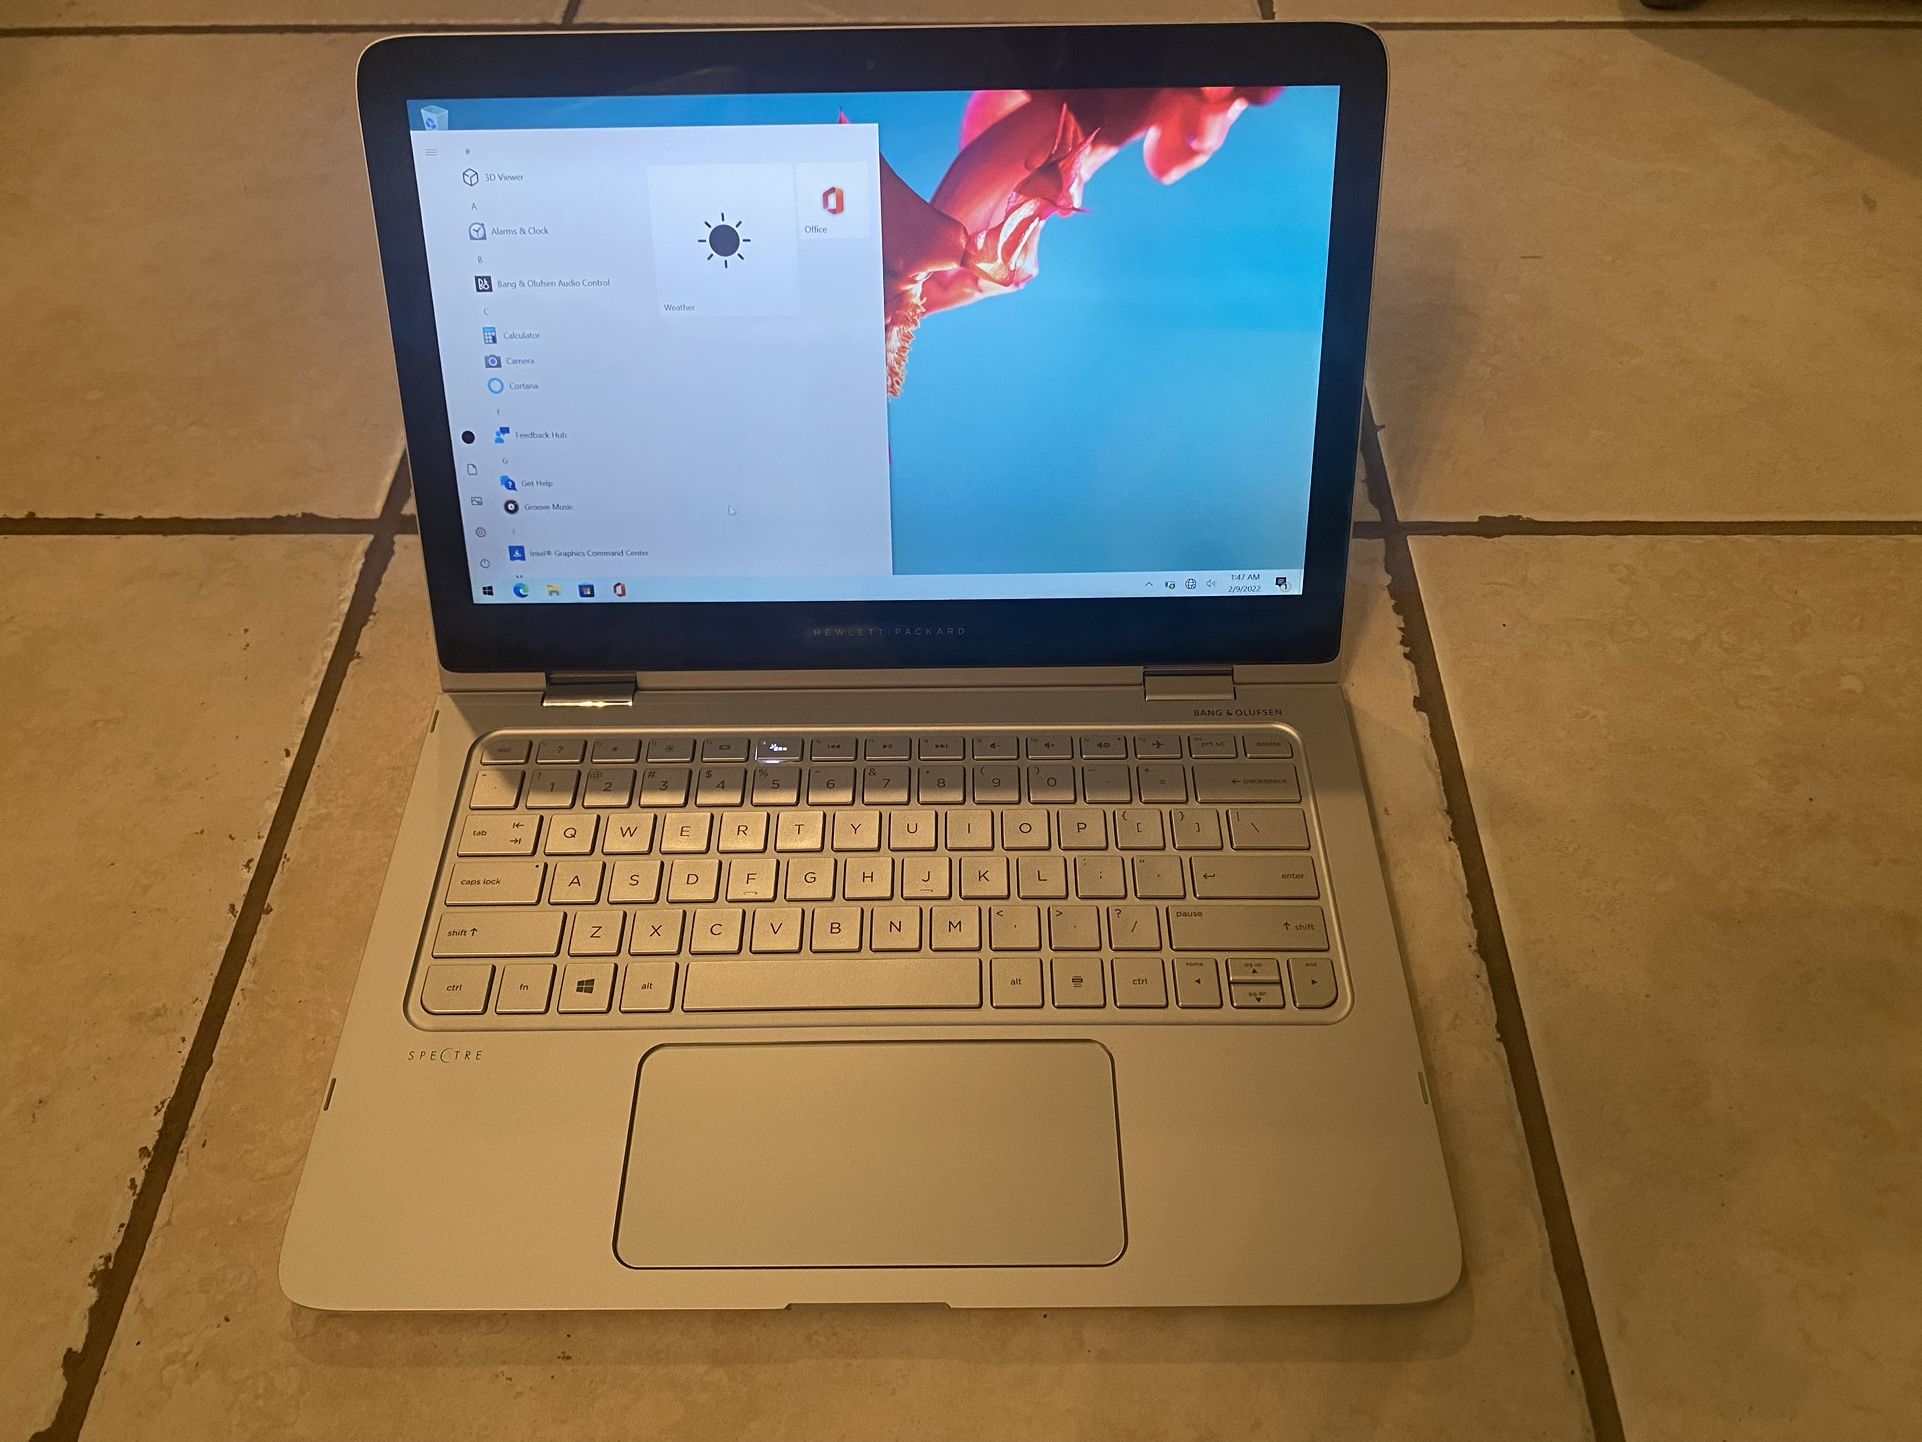 Touchscreen HP Laptop Windows 10, Specter 13-4005dx